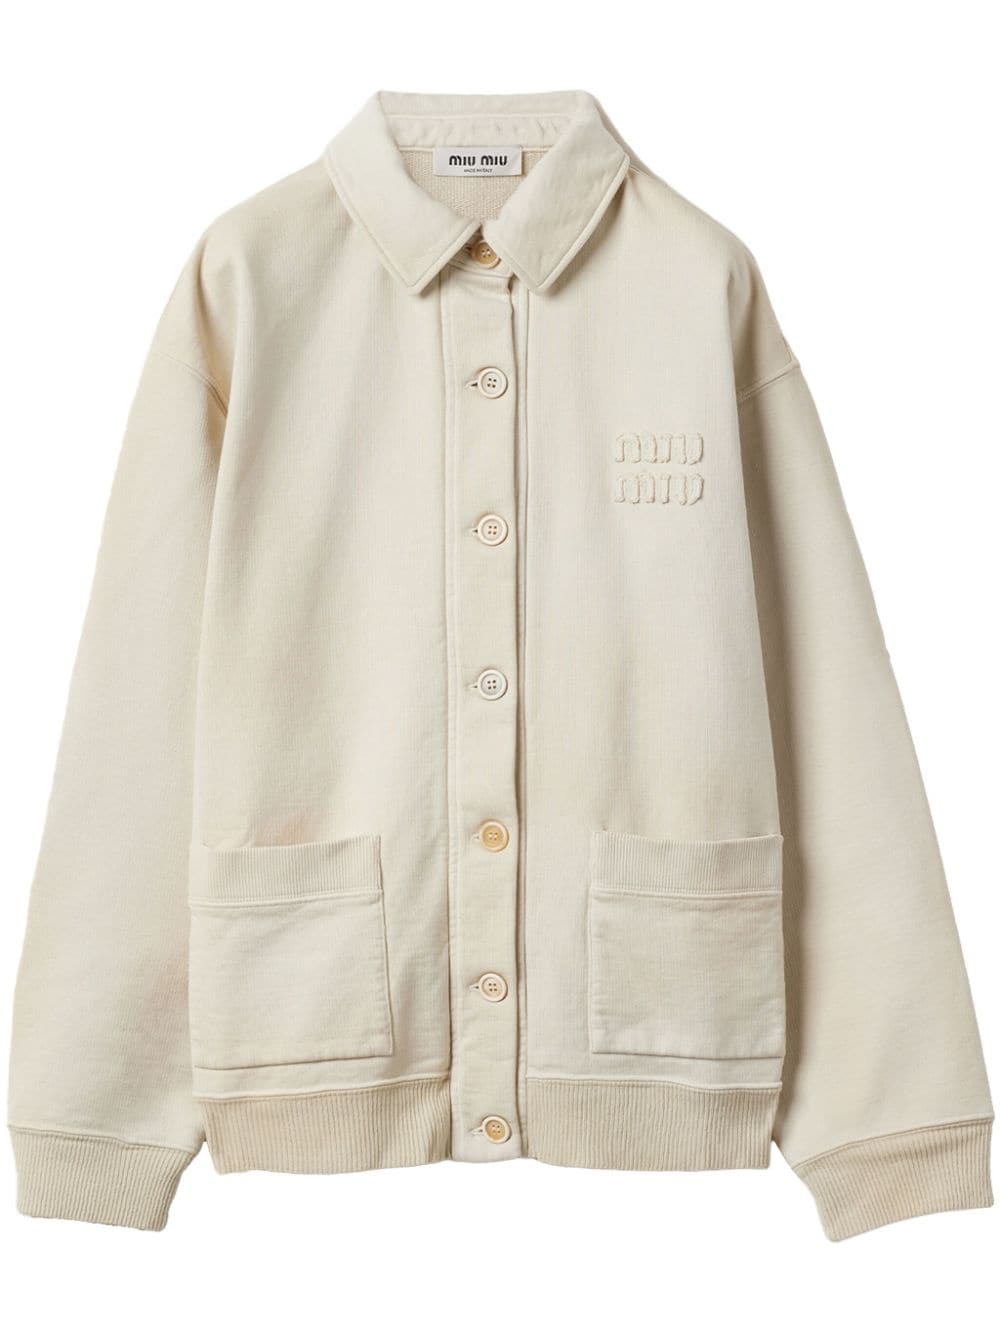 Miu Miu logo-lettering cotton shirt jacket - Neutrals von Miu Miu